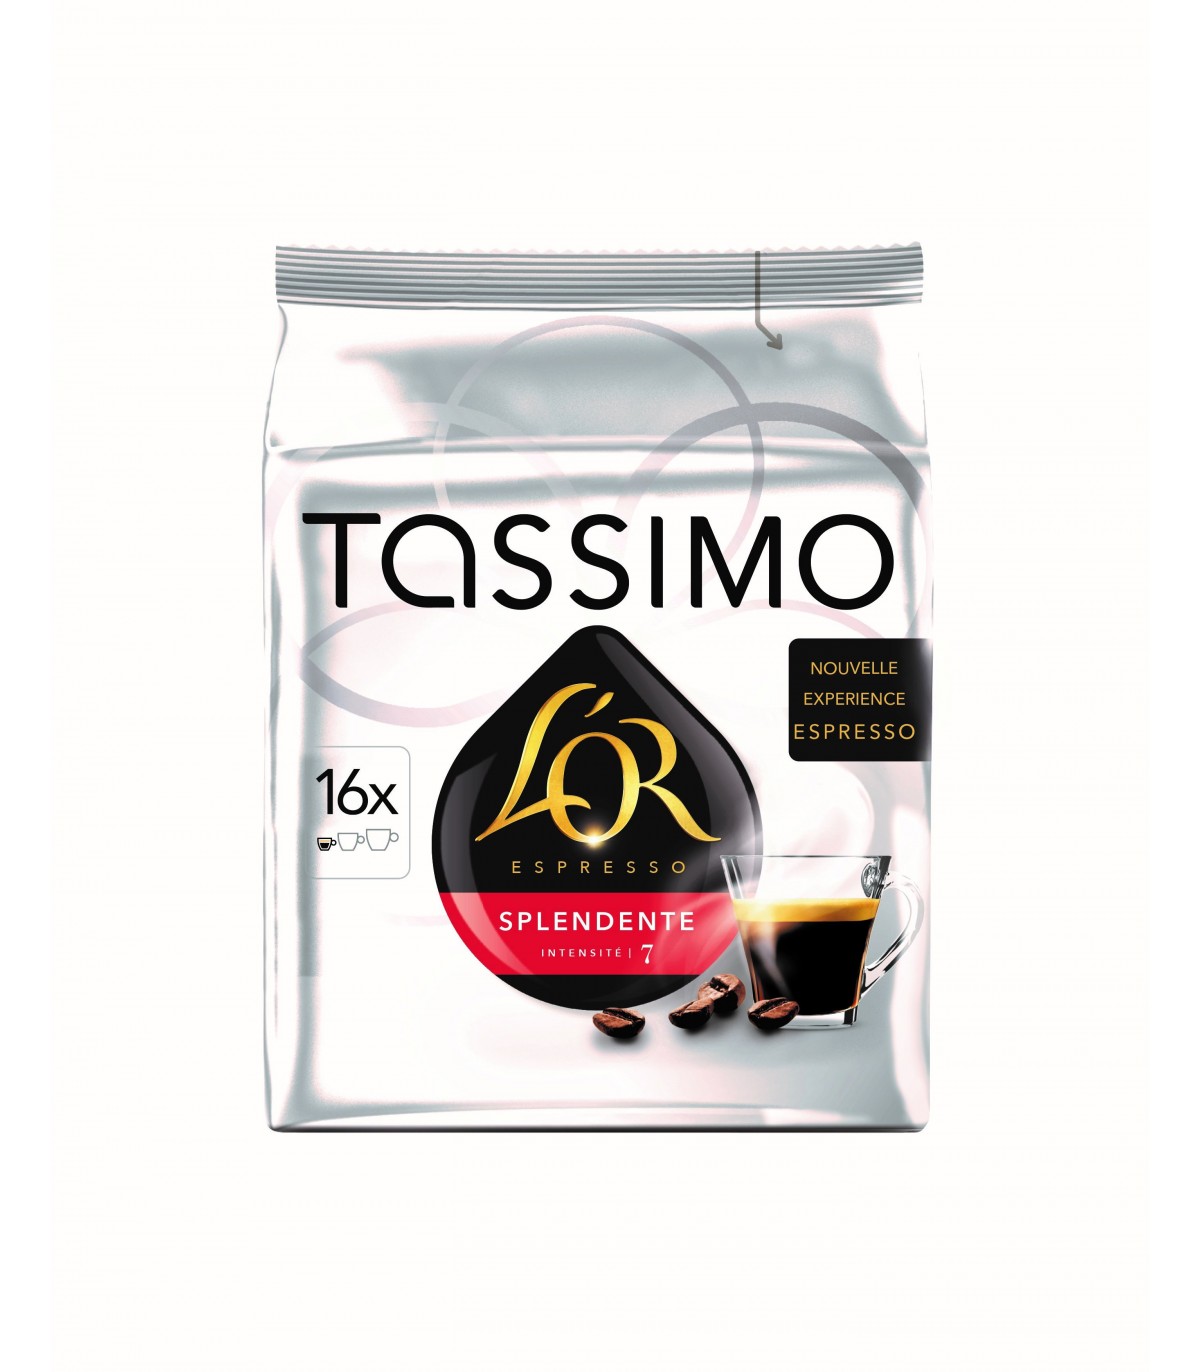 16 dosettes T-Discs Tassimo L'Or XL Classique - Café en dosette, en capsule